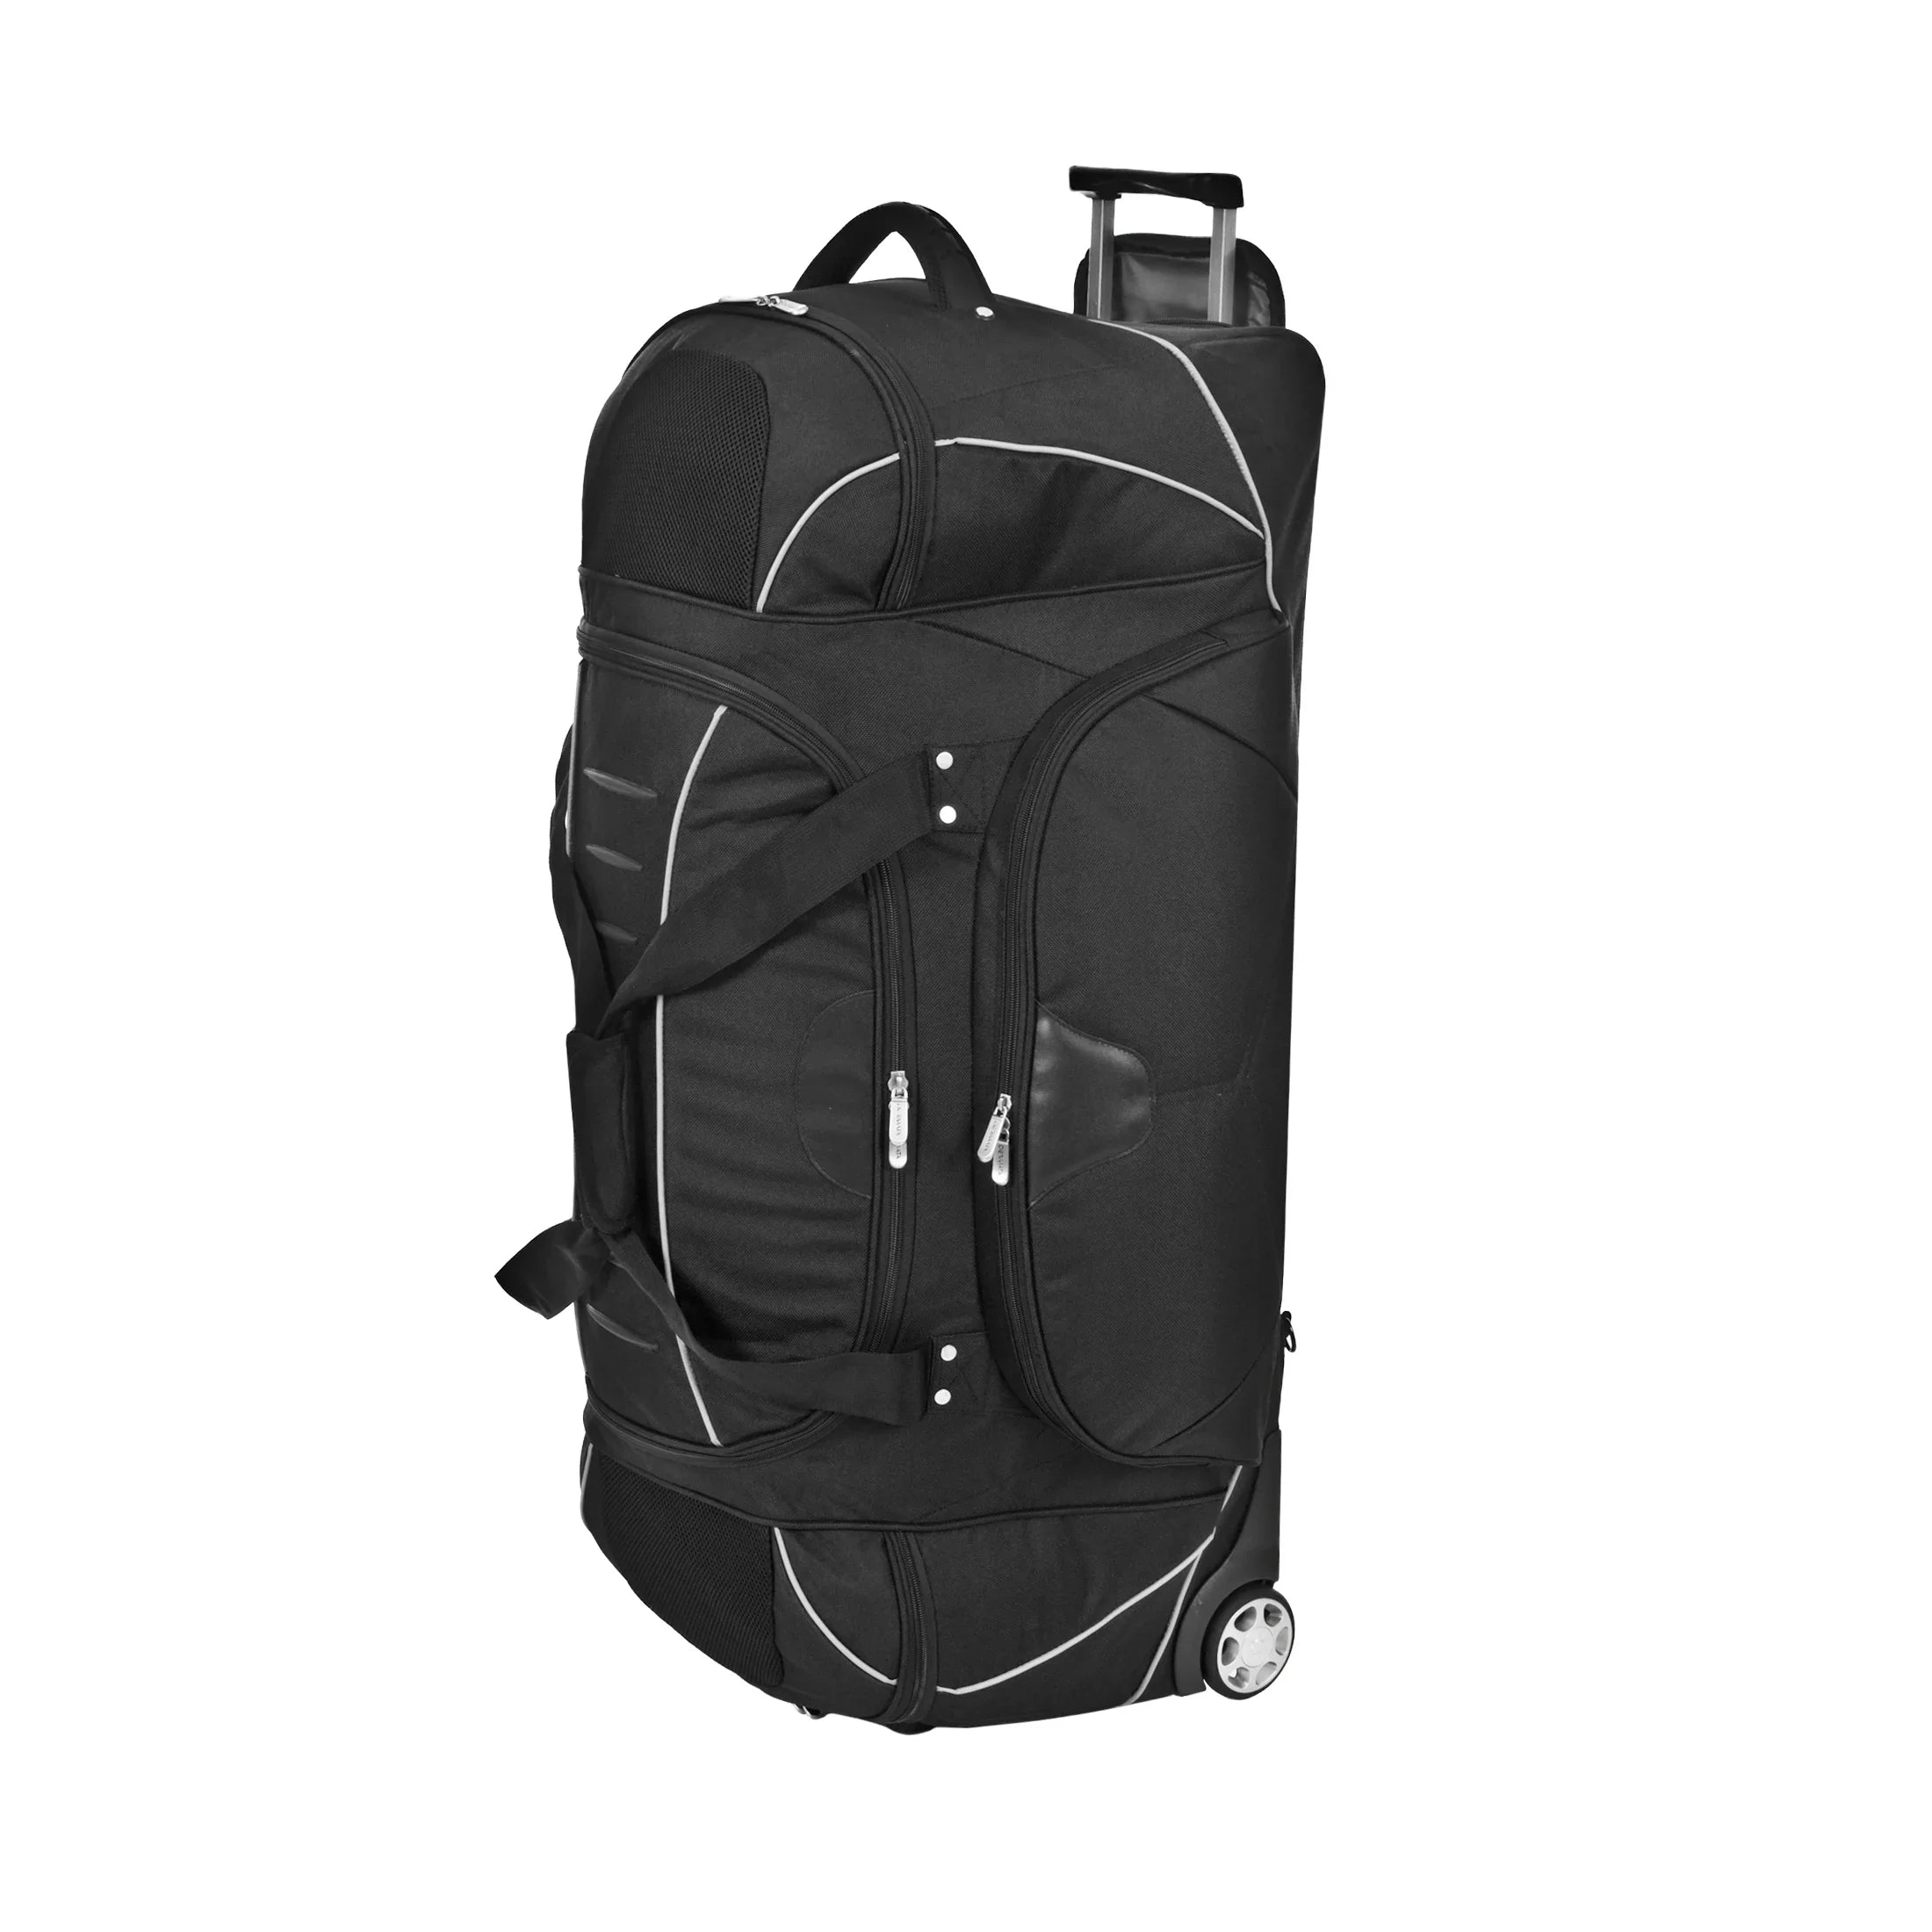 Dermata Reise Rollenreisetasche mit Rucksackfunktion 96 cm - schwarz